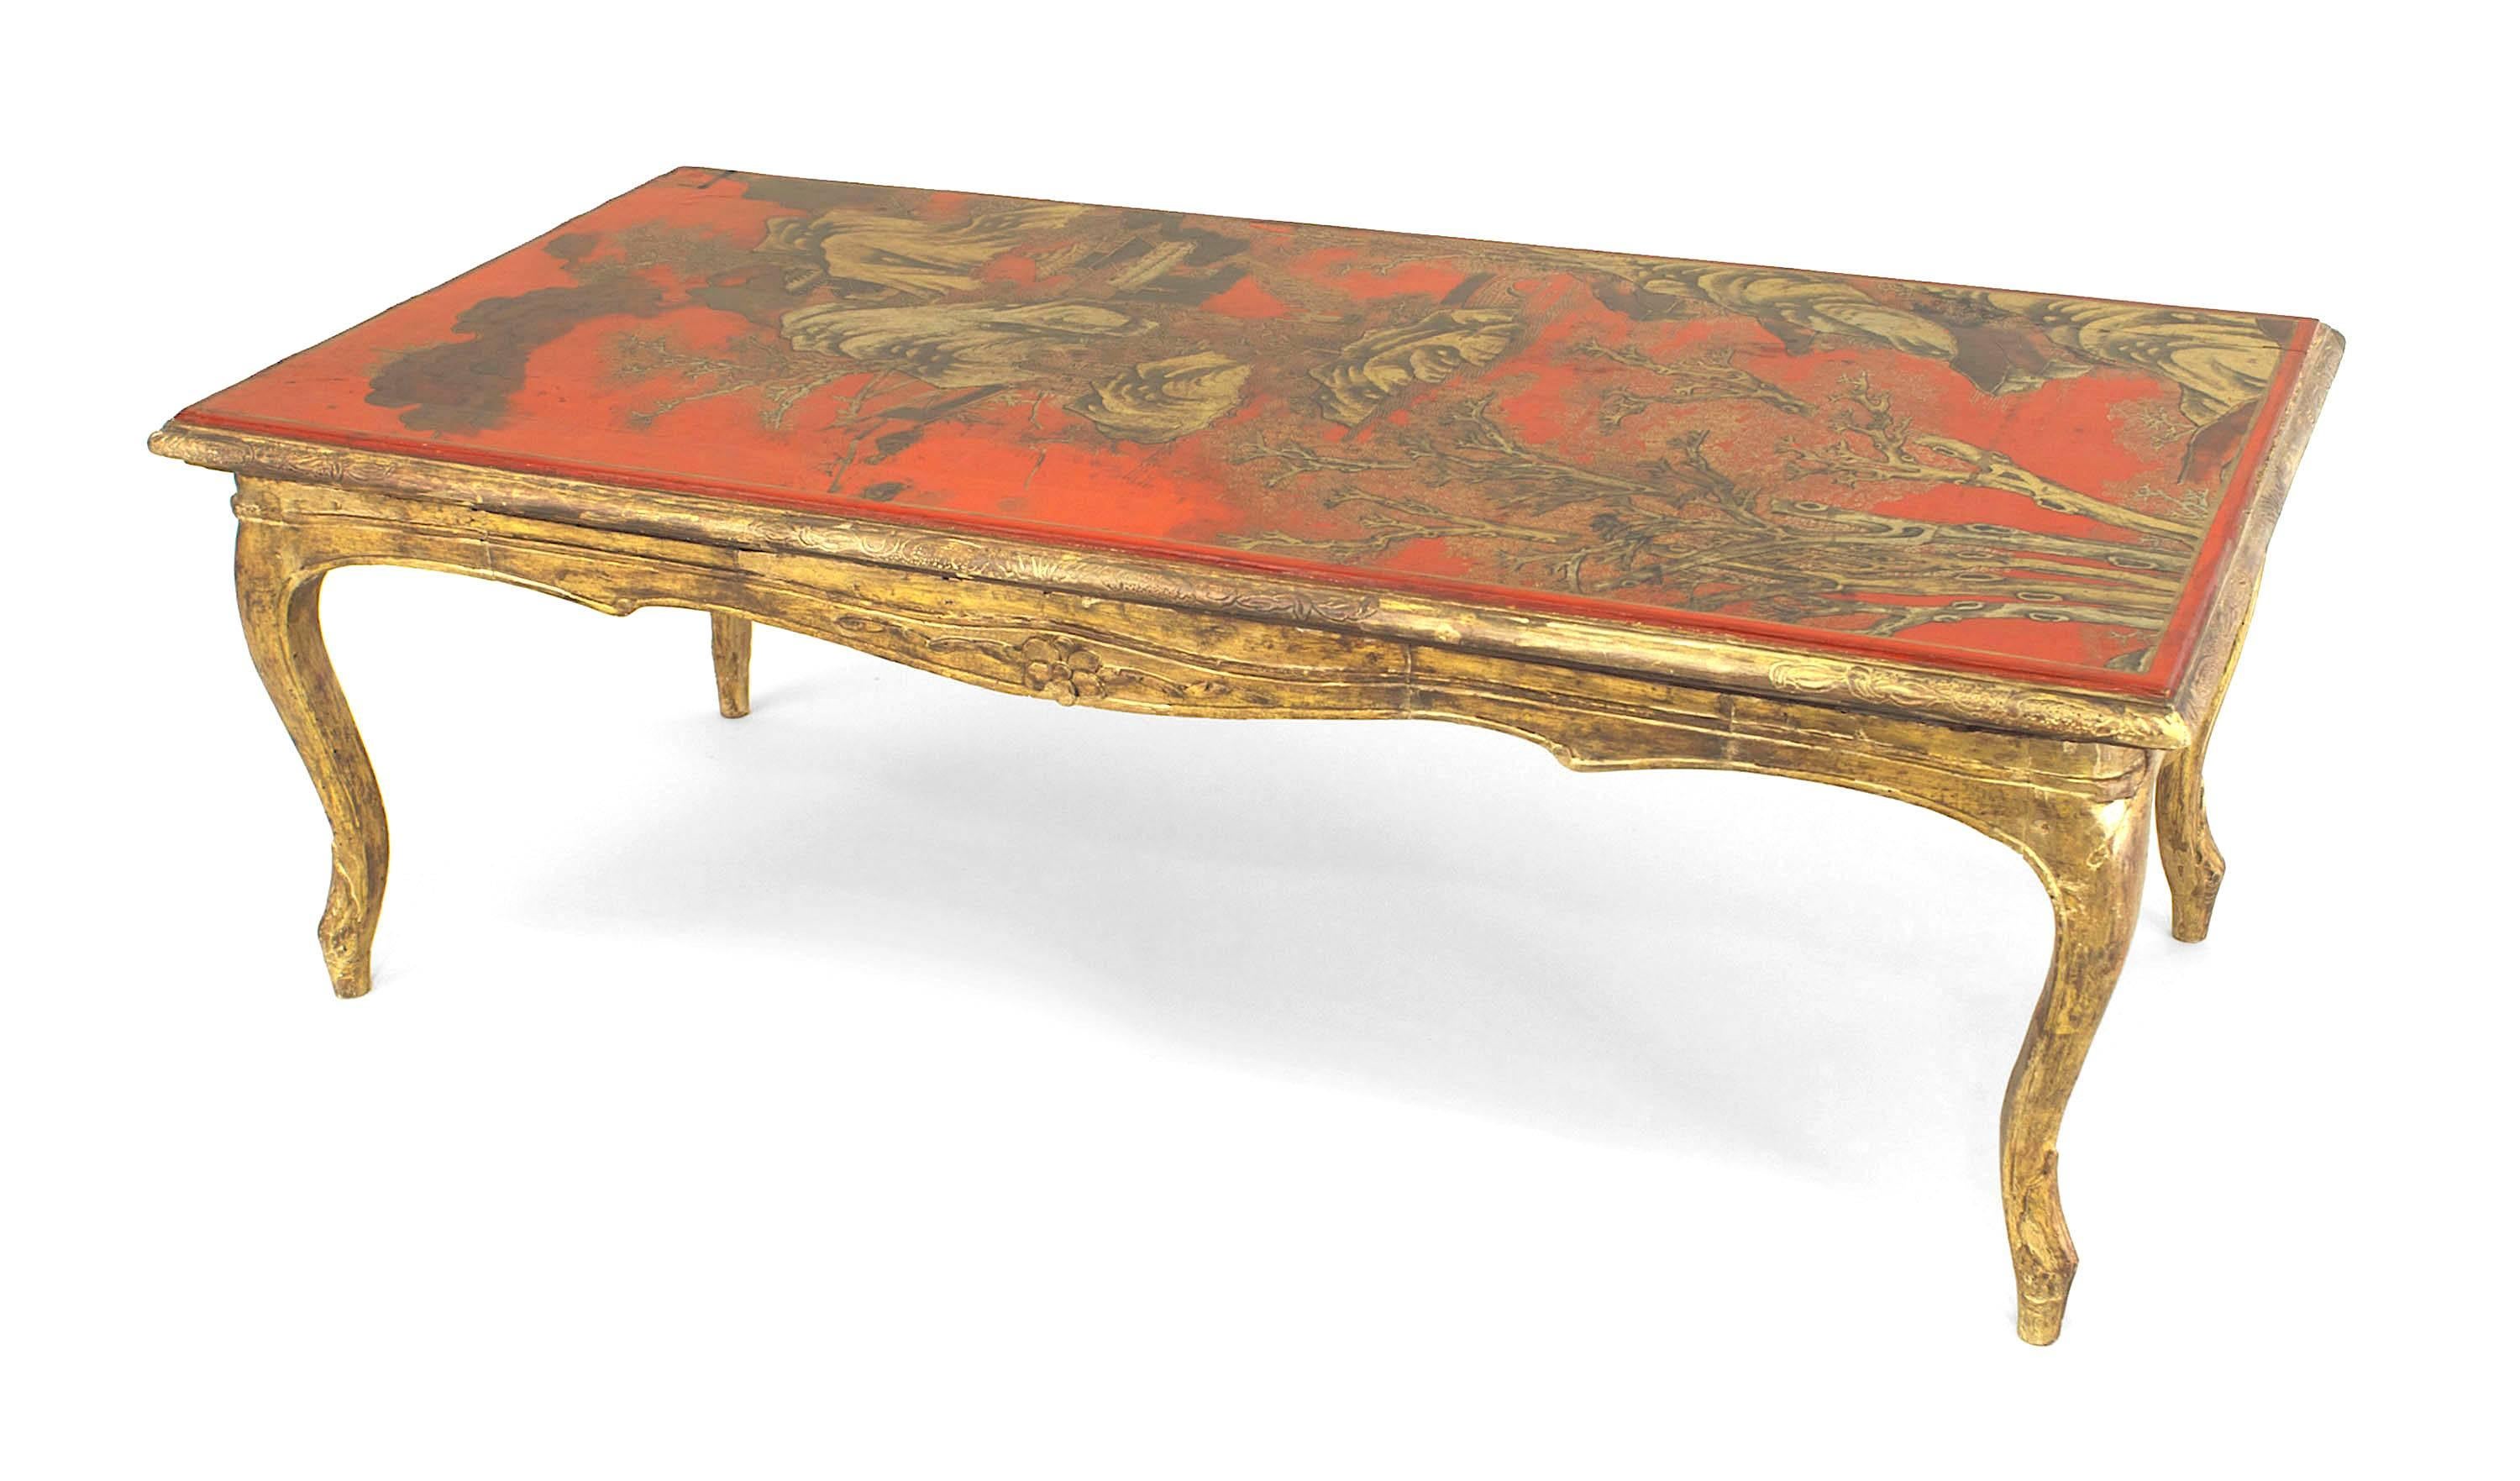 Table basse rectangulaire de style Louis XV français, à base de bois doré, supportant un plateau à décor de chinoiserie laqué rouge.